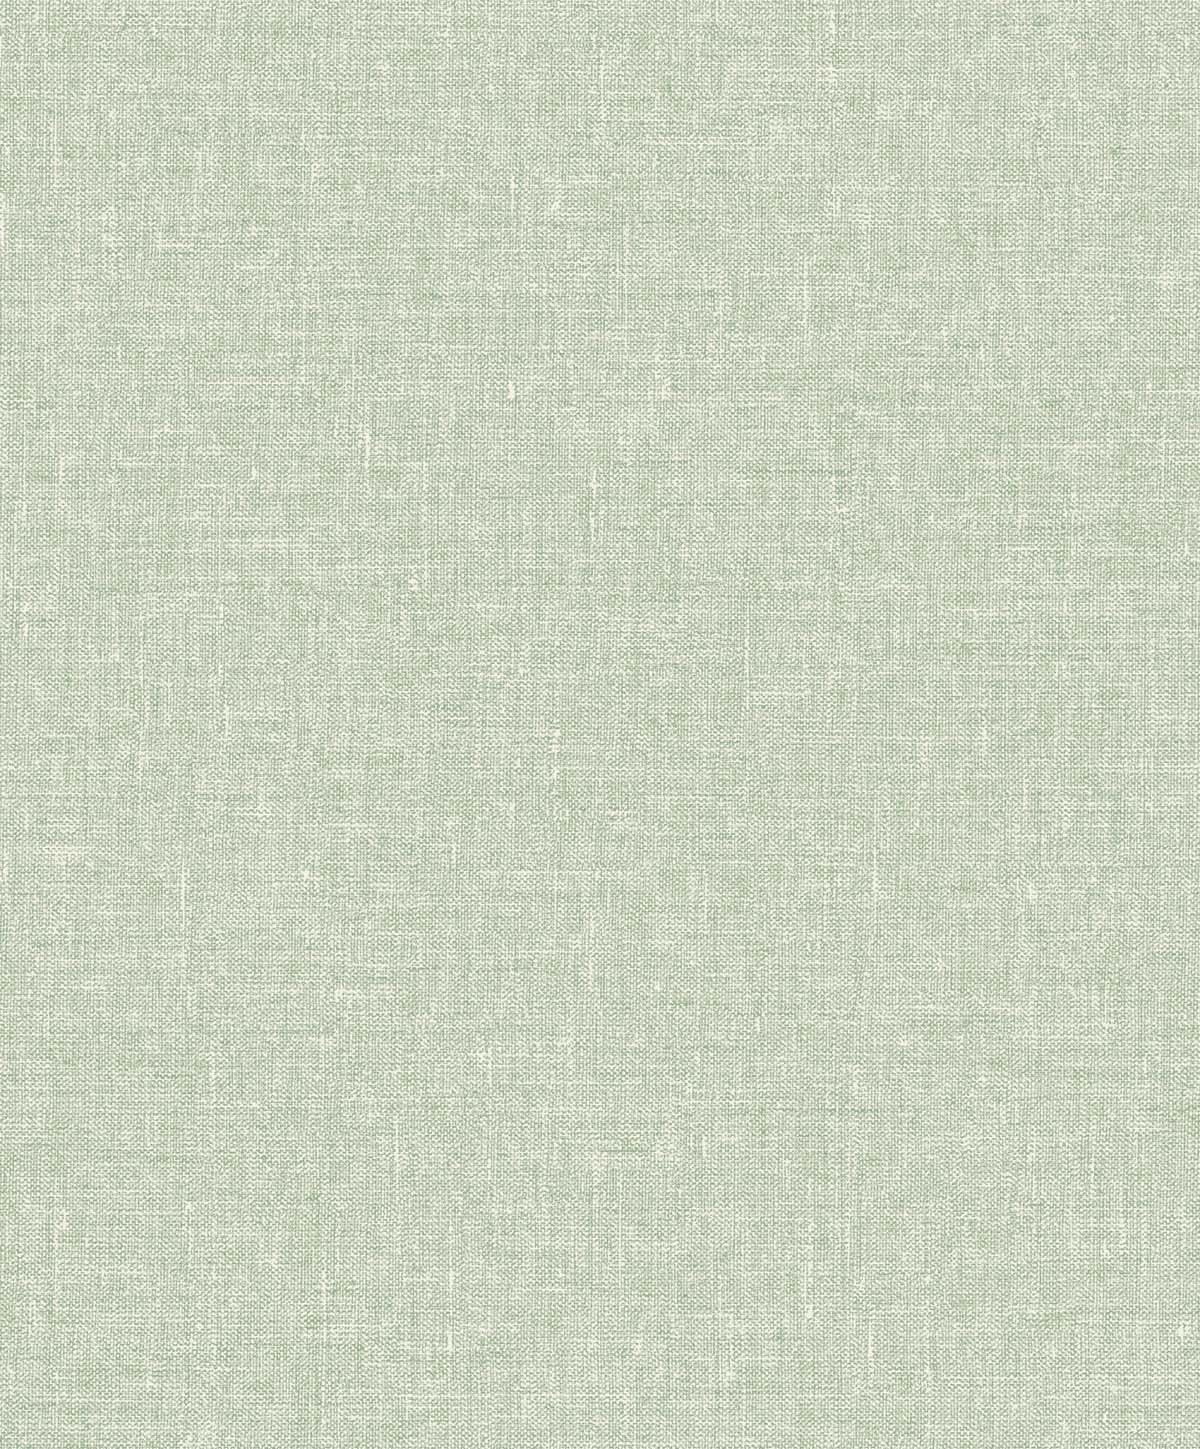 SL81104 | Soft Linen , Green - Seabrook Designs Wallpaper